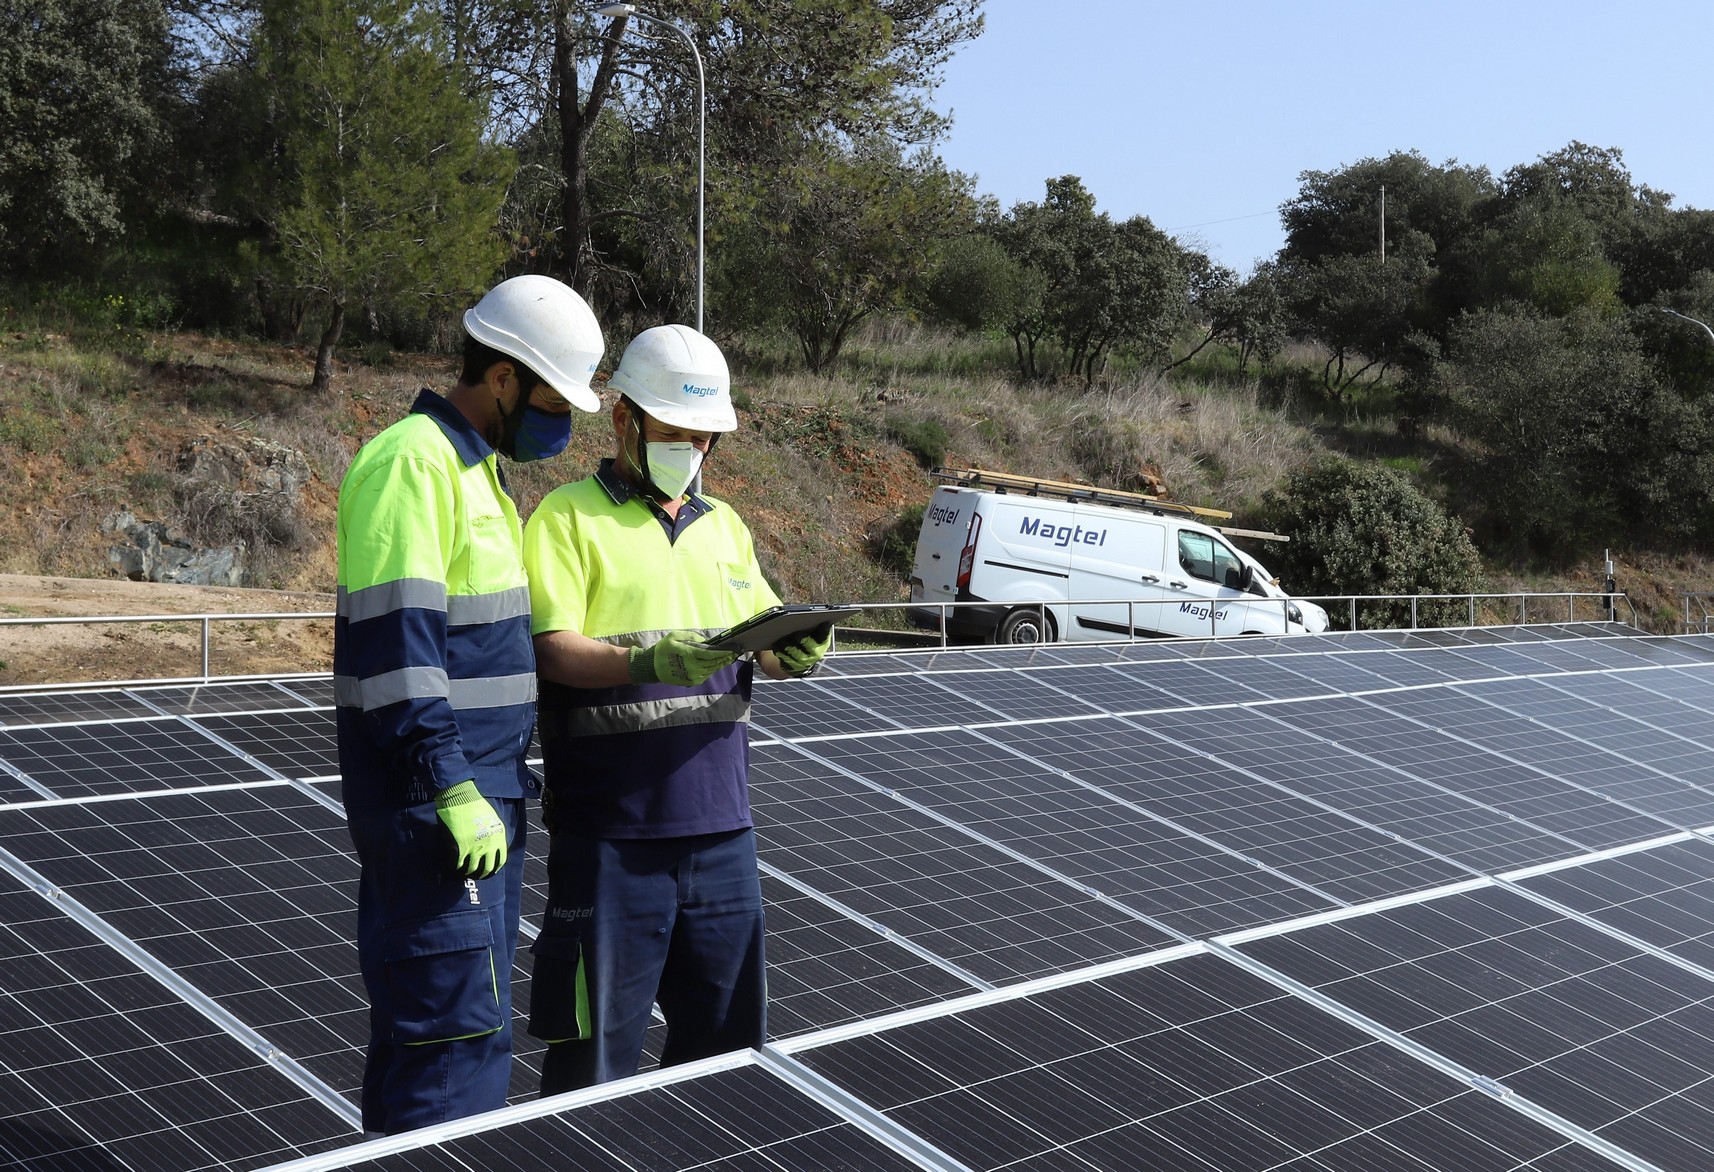 Magtel ejecuta la instalación fotovoltaica para autoconsumo que dará servicio a la ETAP de Guadanuño en Córdoba - Magtel